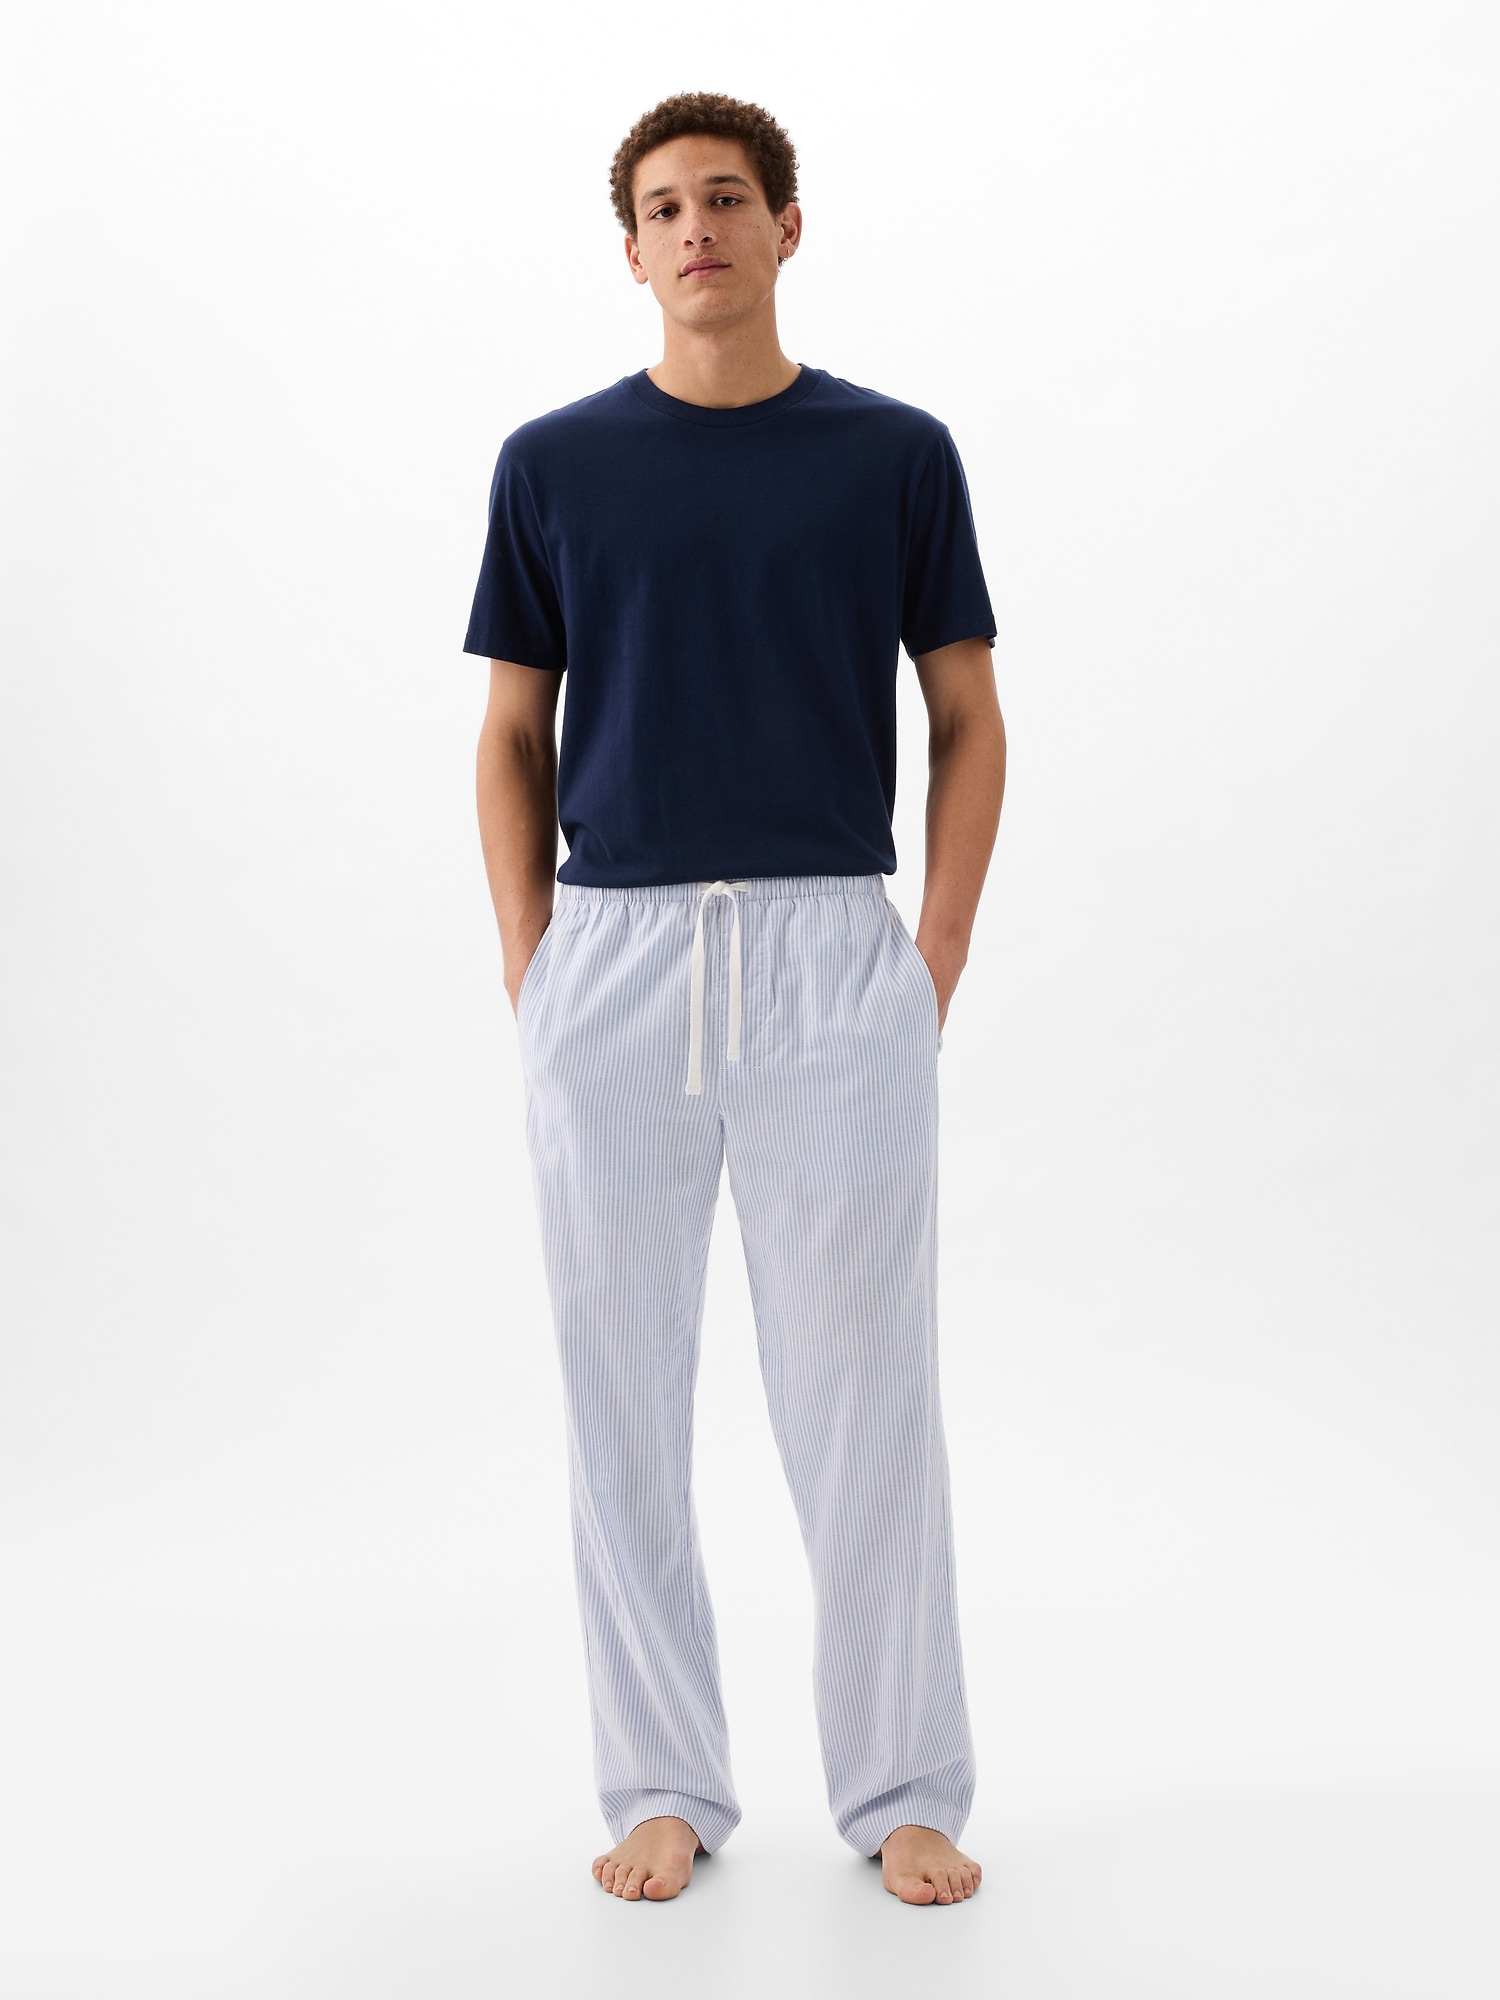 Gap Lightweight Flannel Pj Pants In Light Blue Stripe